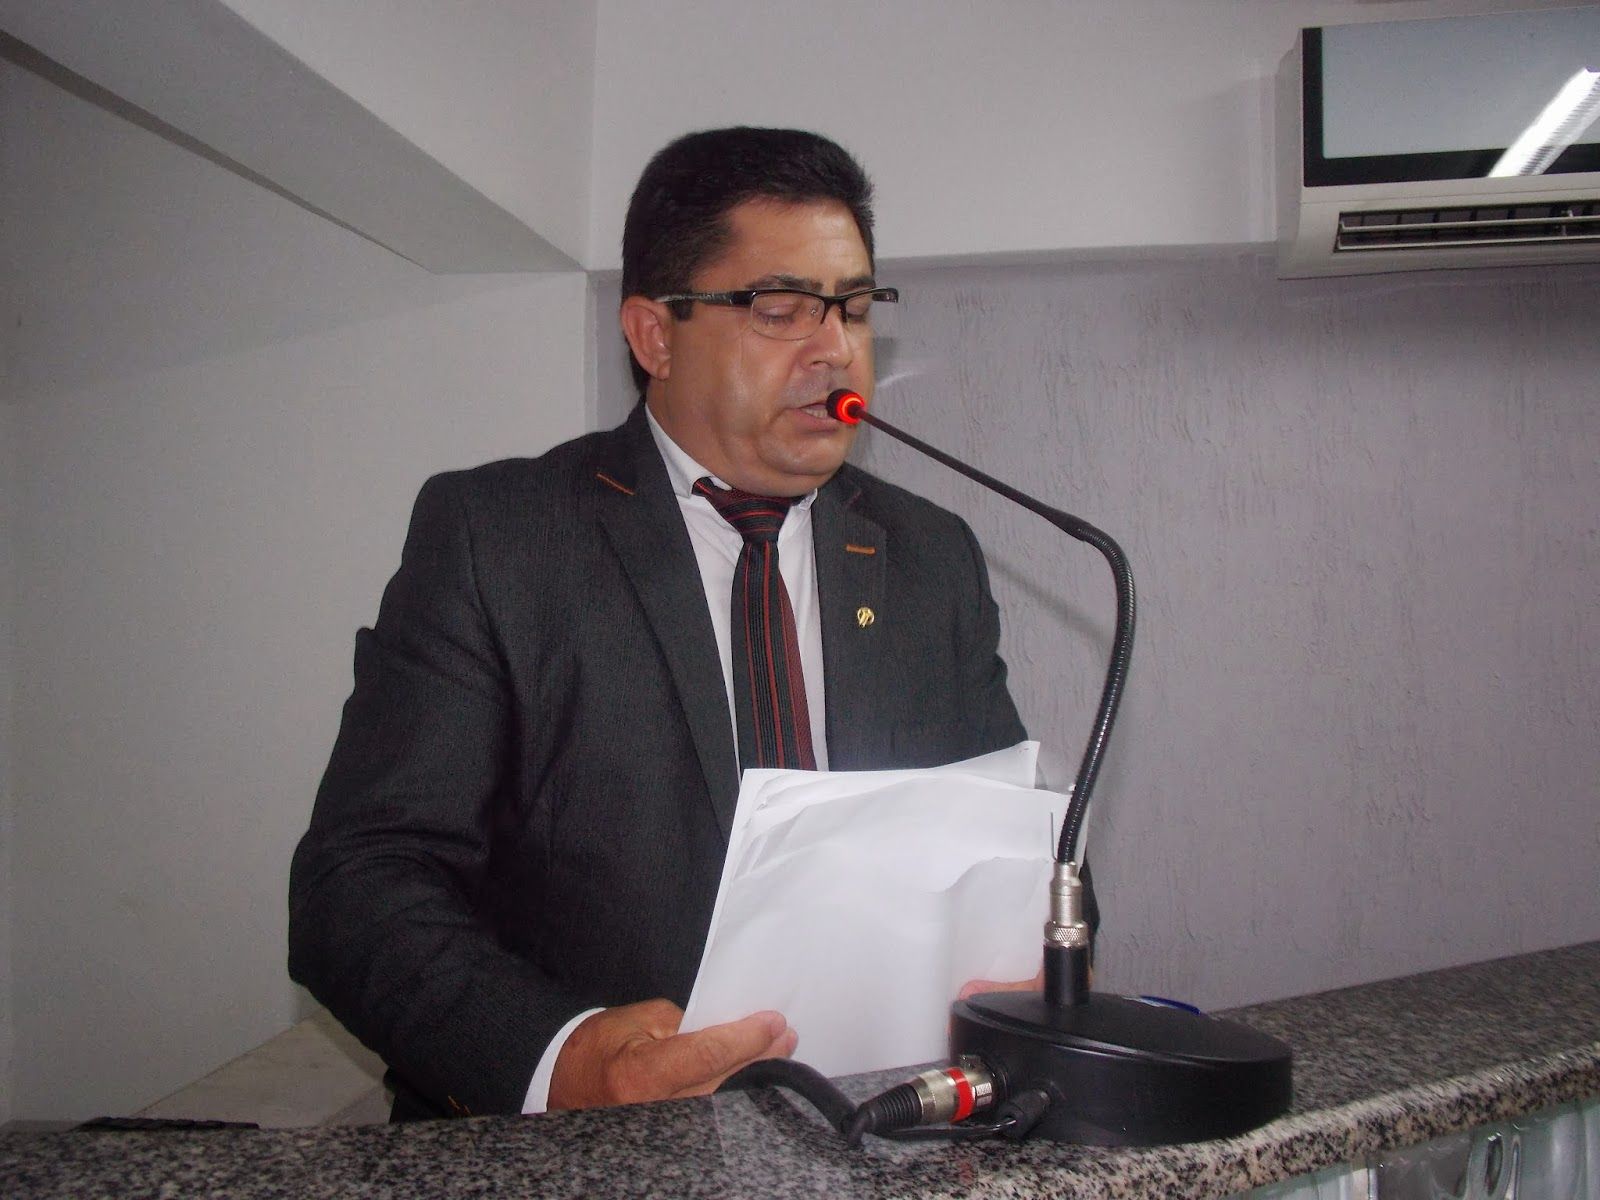 CADEIRA ALMEJADA: Surge mais dois candidatos ao cargo de Presidente da câmara municipal de Barra do Corda